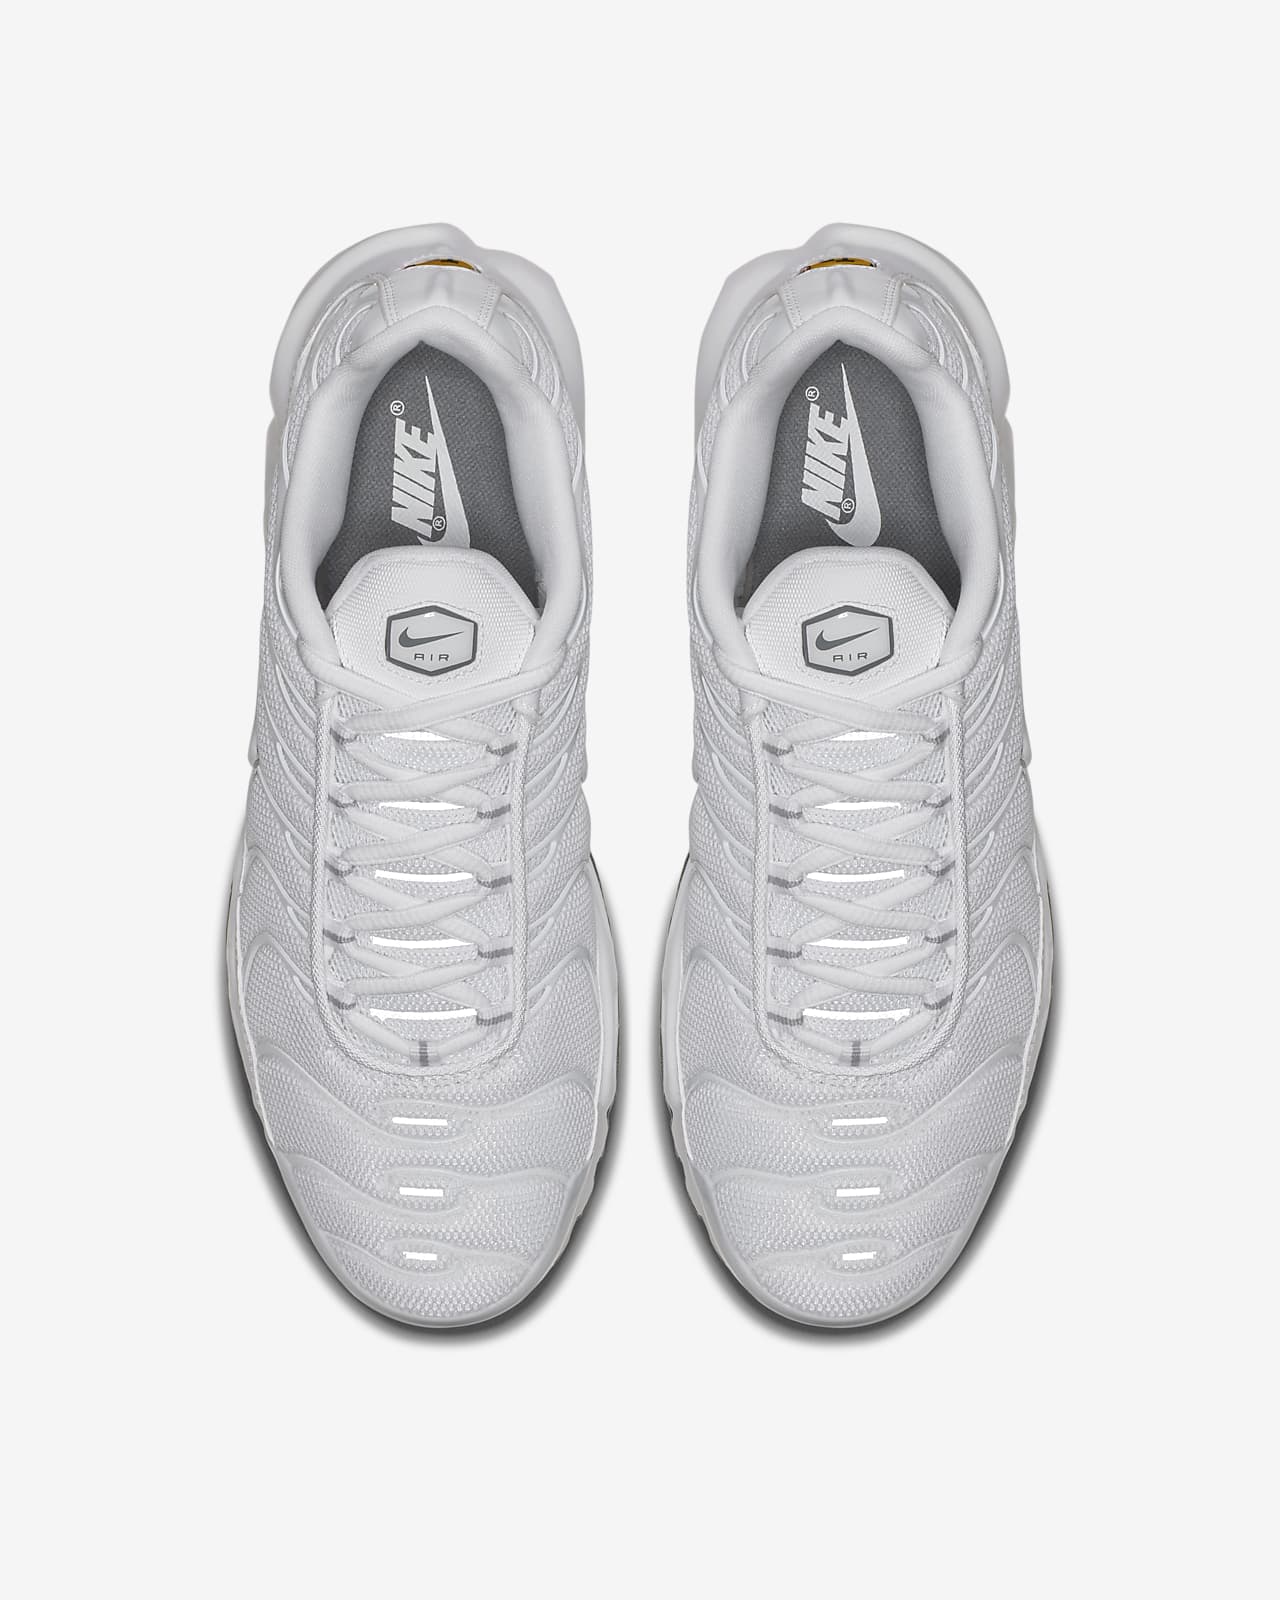 Nike Air Max Plus TN – White